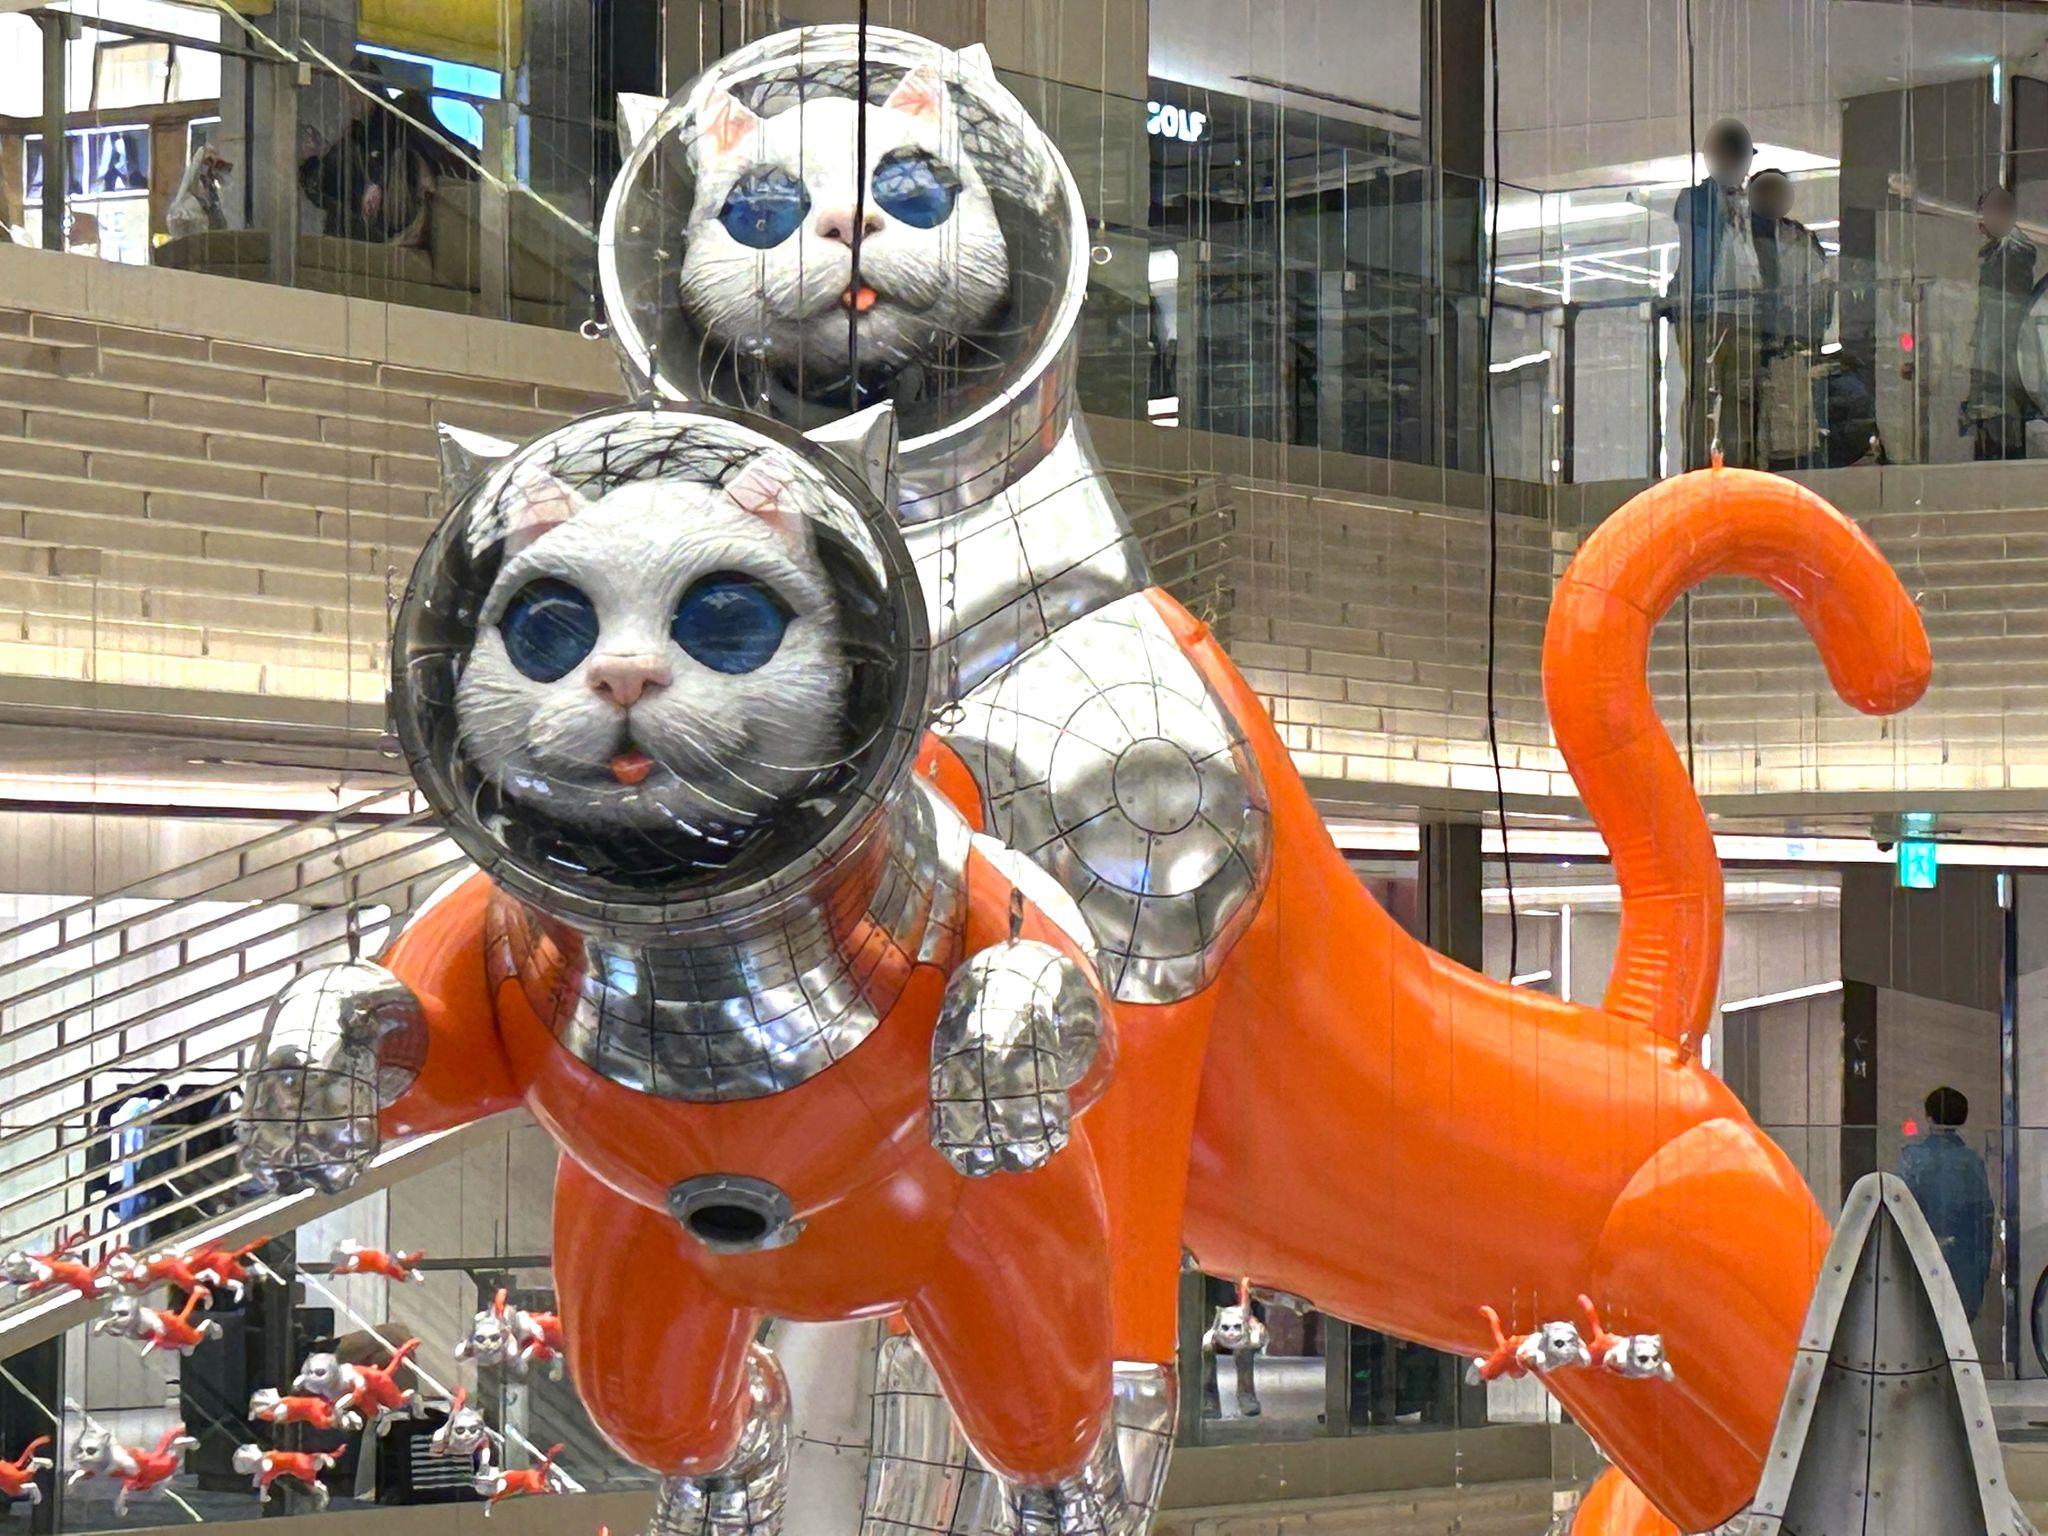 ヤノベケンジさん作の巨大アート「BIG CAT BANG（ビッグ キャット バン）」